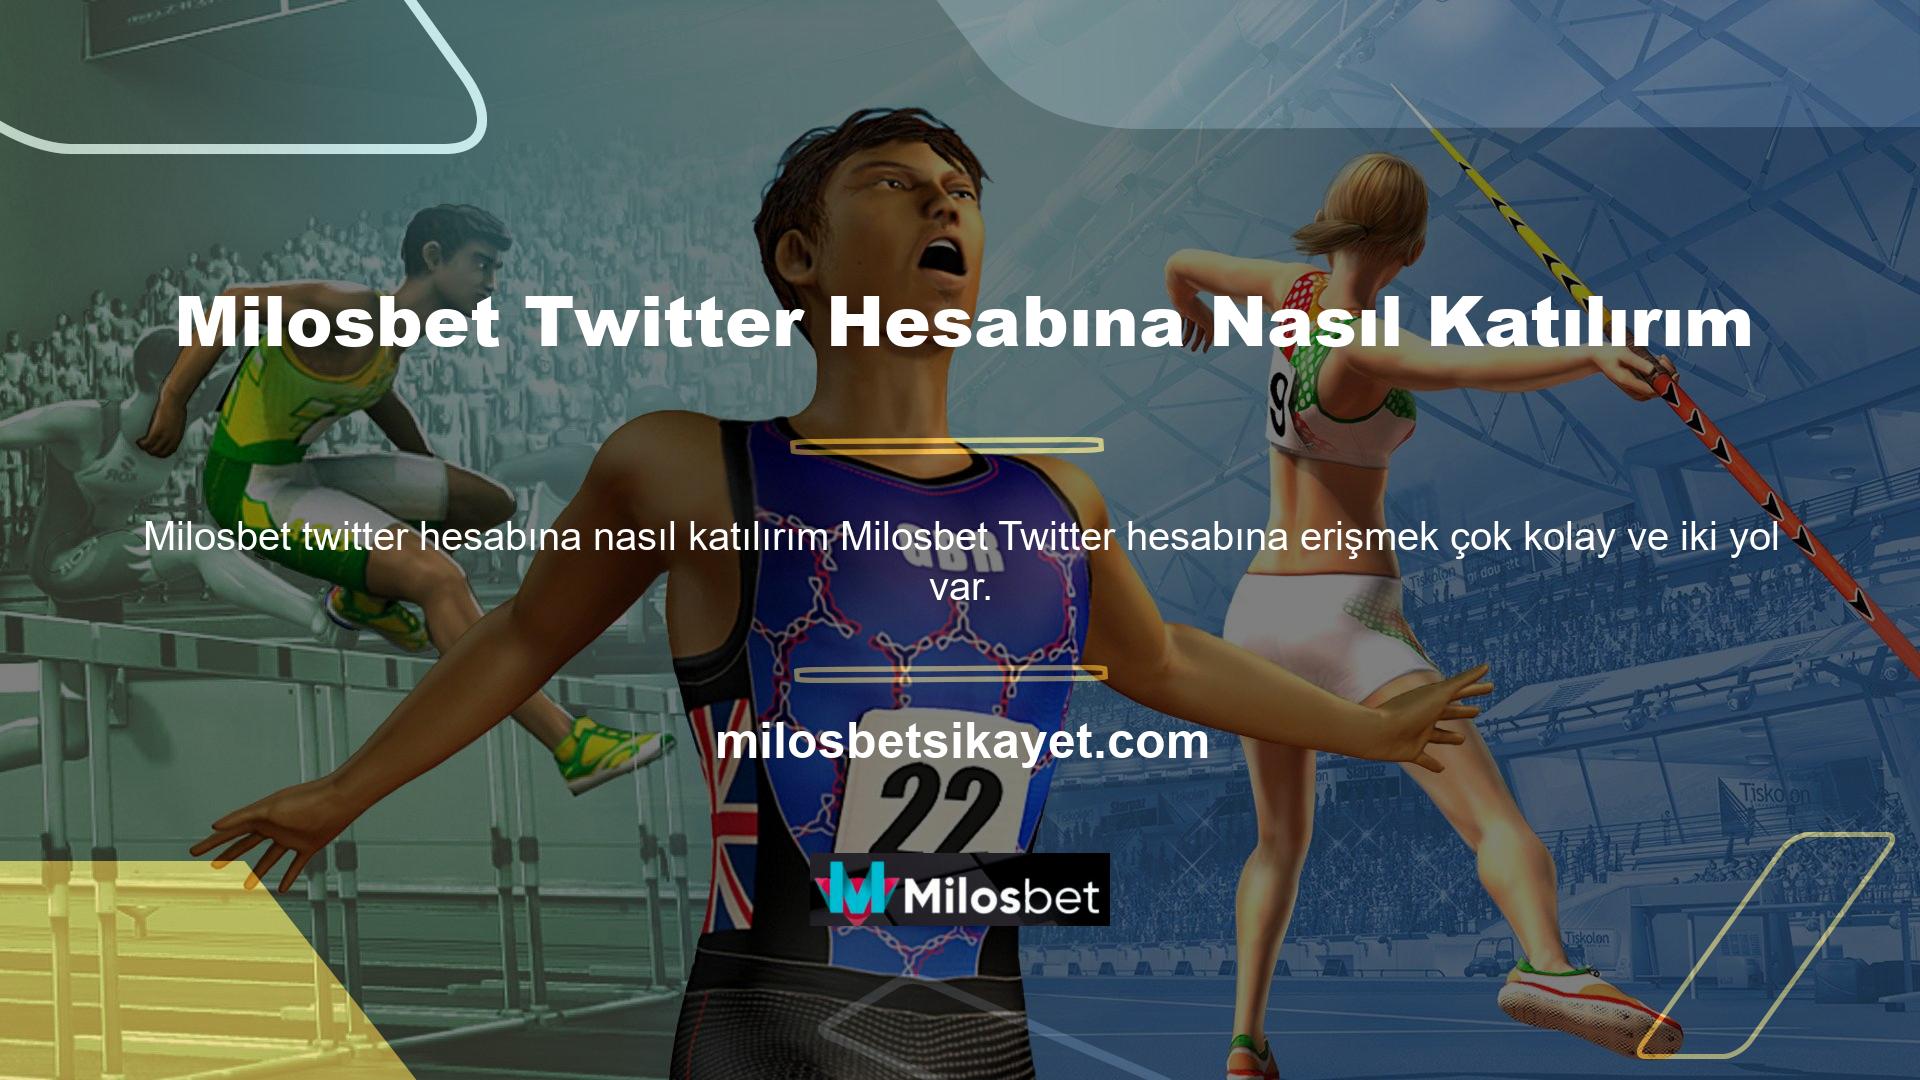 Milosbet resmi web sitesi Twitter logosu, herhangi bir güçlük çekmeden kolay ve hızlı bir şekilde doğru köşeye gitmenize yardımcı olacaktır